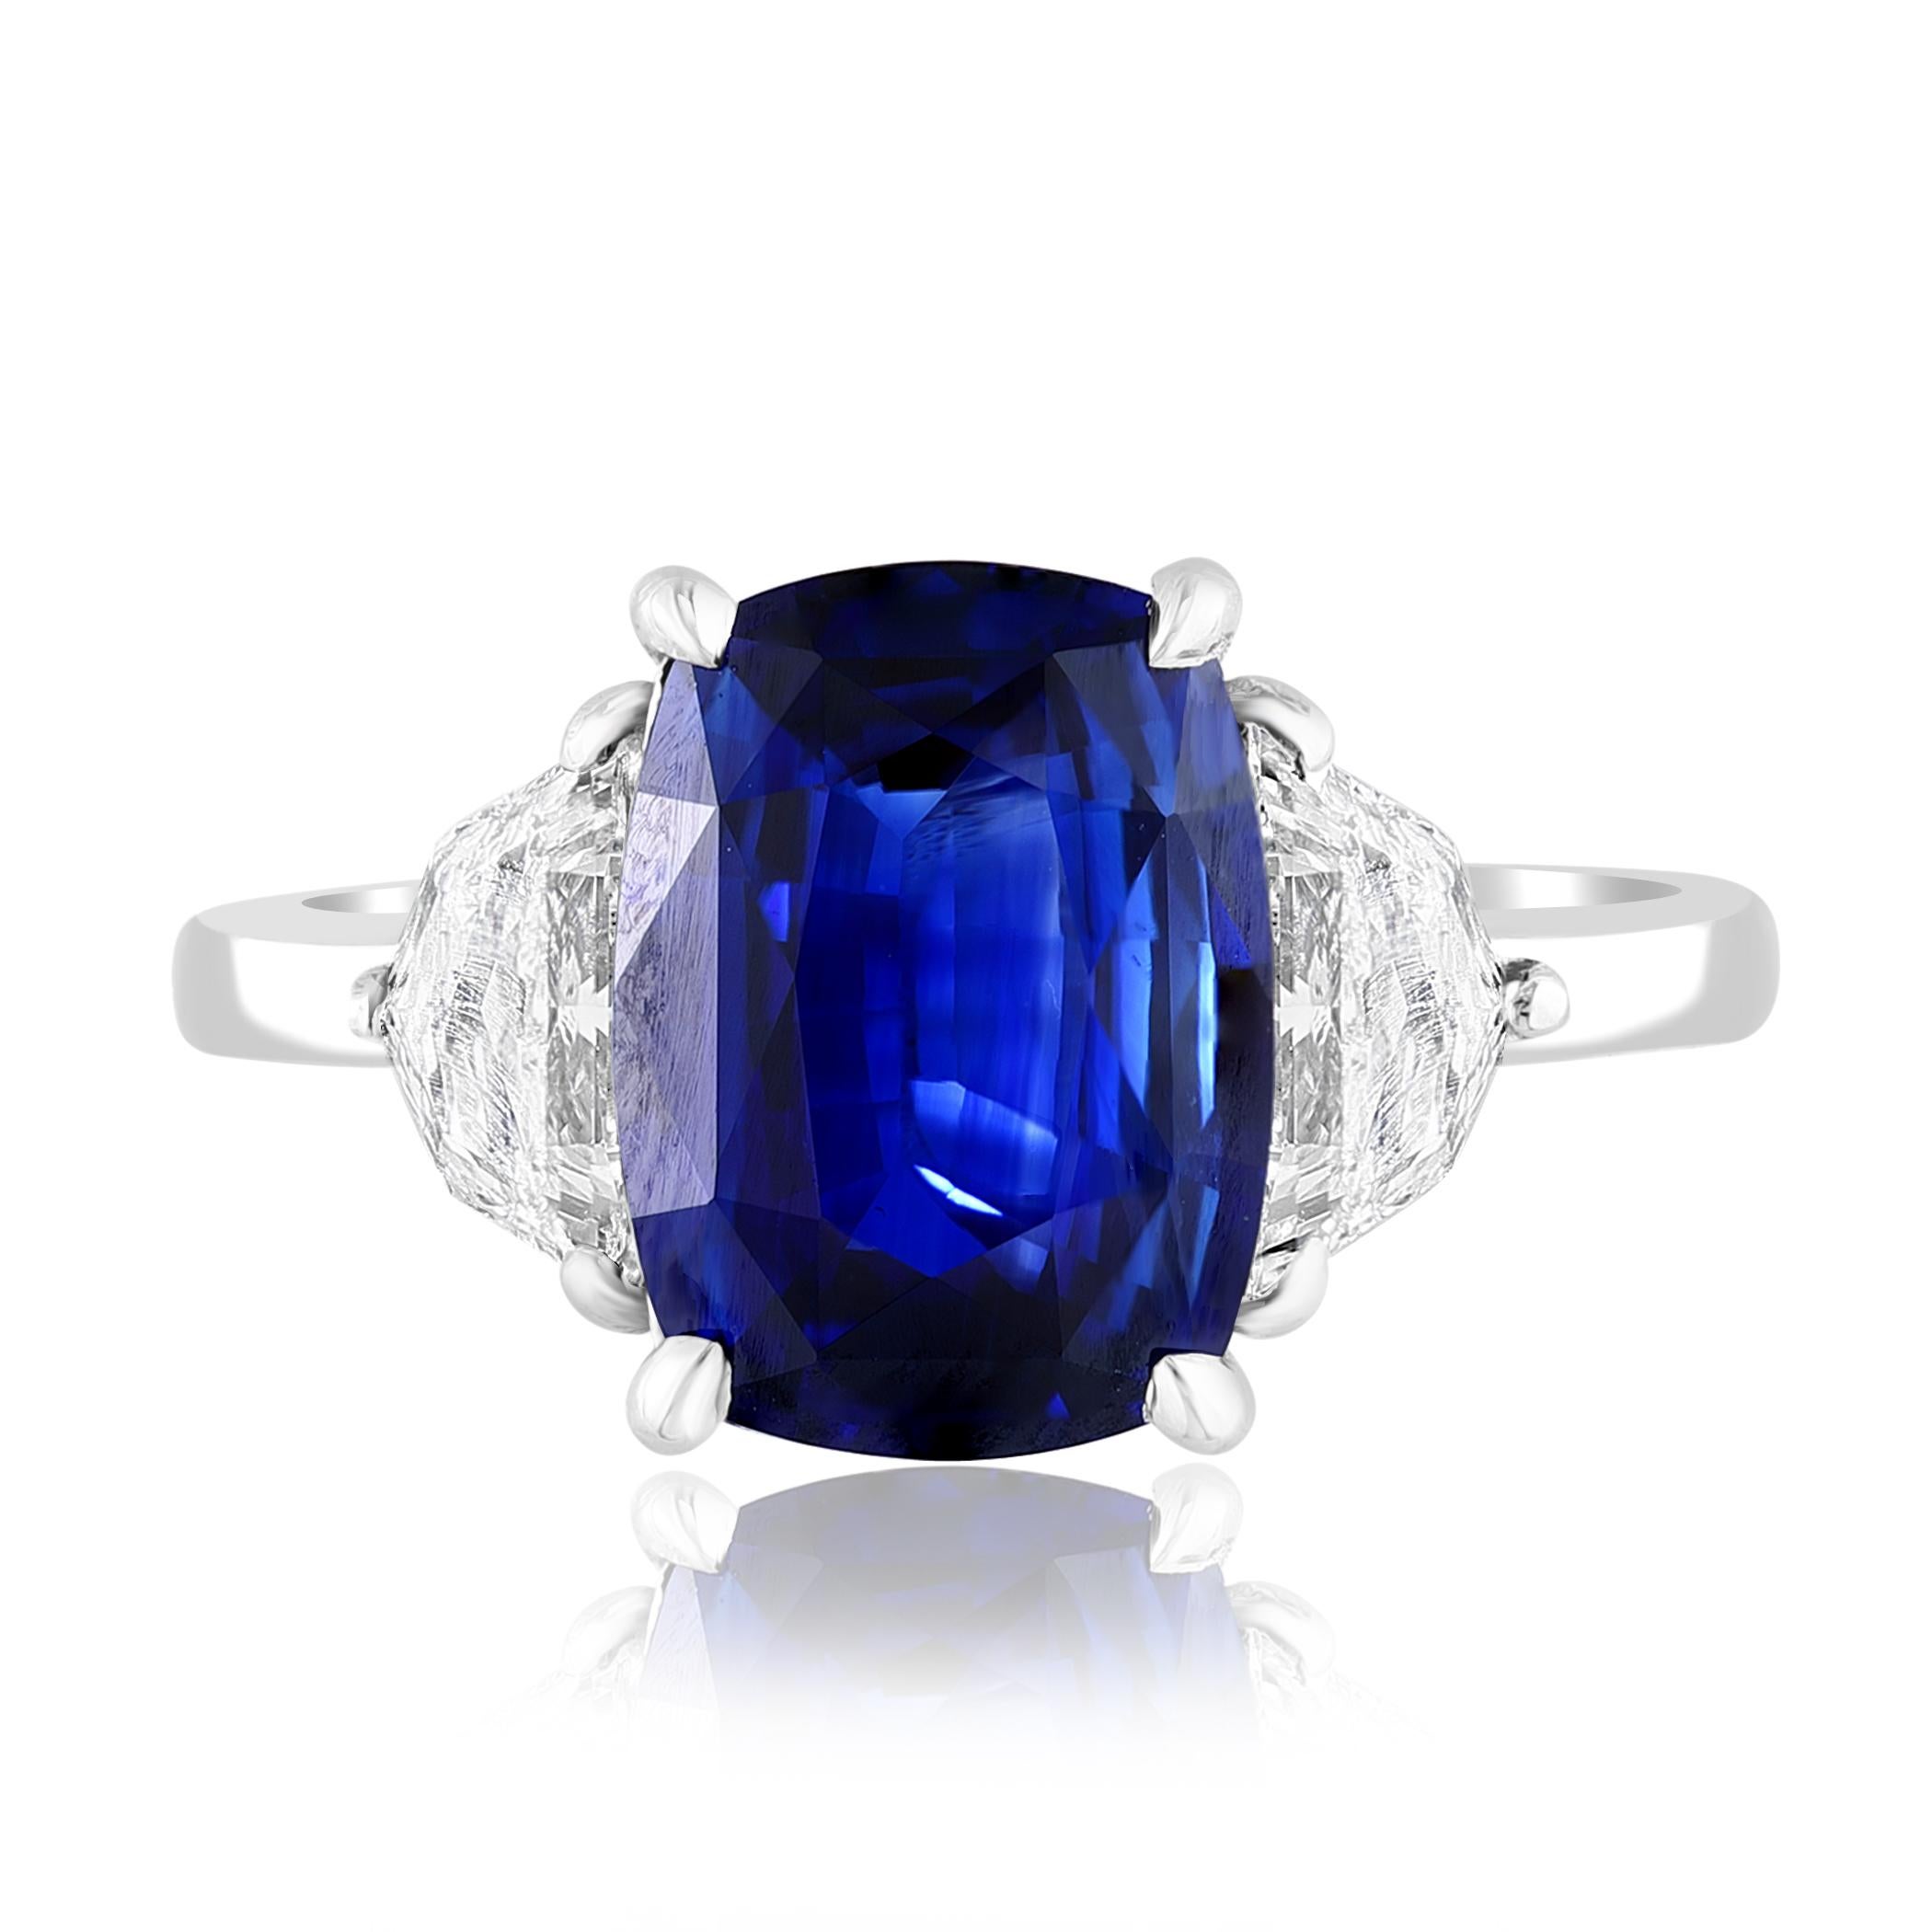 Er präsentiert einen zertifizierten blauen Saphir im Kissenschliff mit einem Gewicht von 3,54 Karat, flankiert von zwei Diamanten mit Brillantschliff und einem Gesamtgewicht von 0,72 Karat. Elegant eingefasst in eine polierte Platinkomposition.